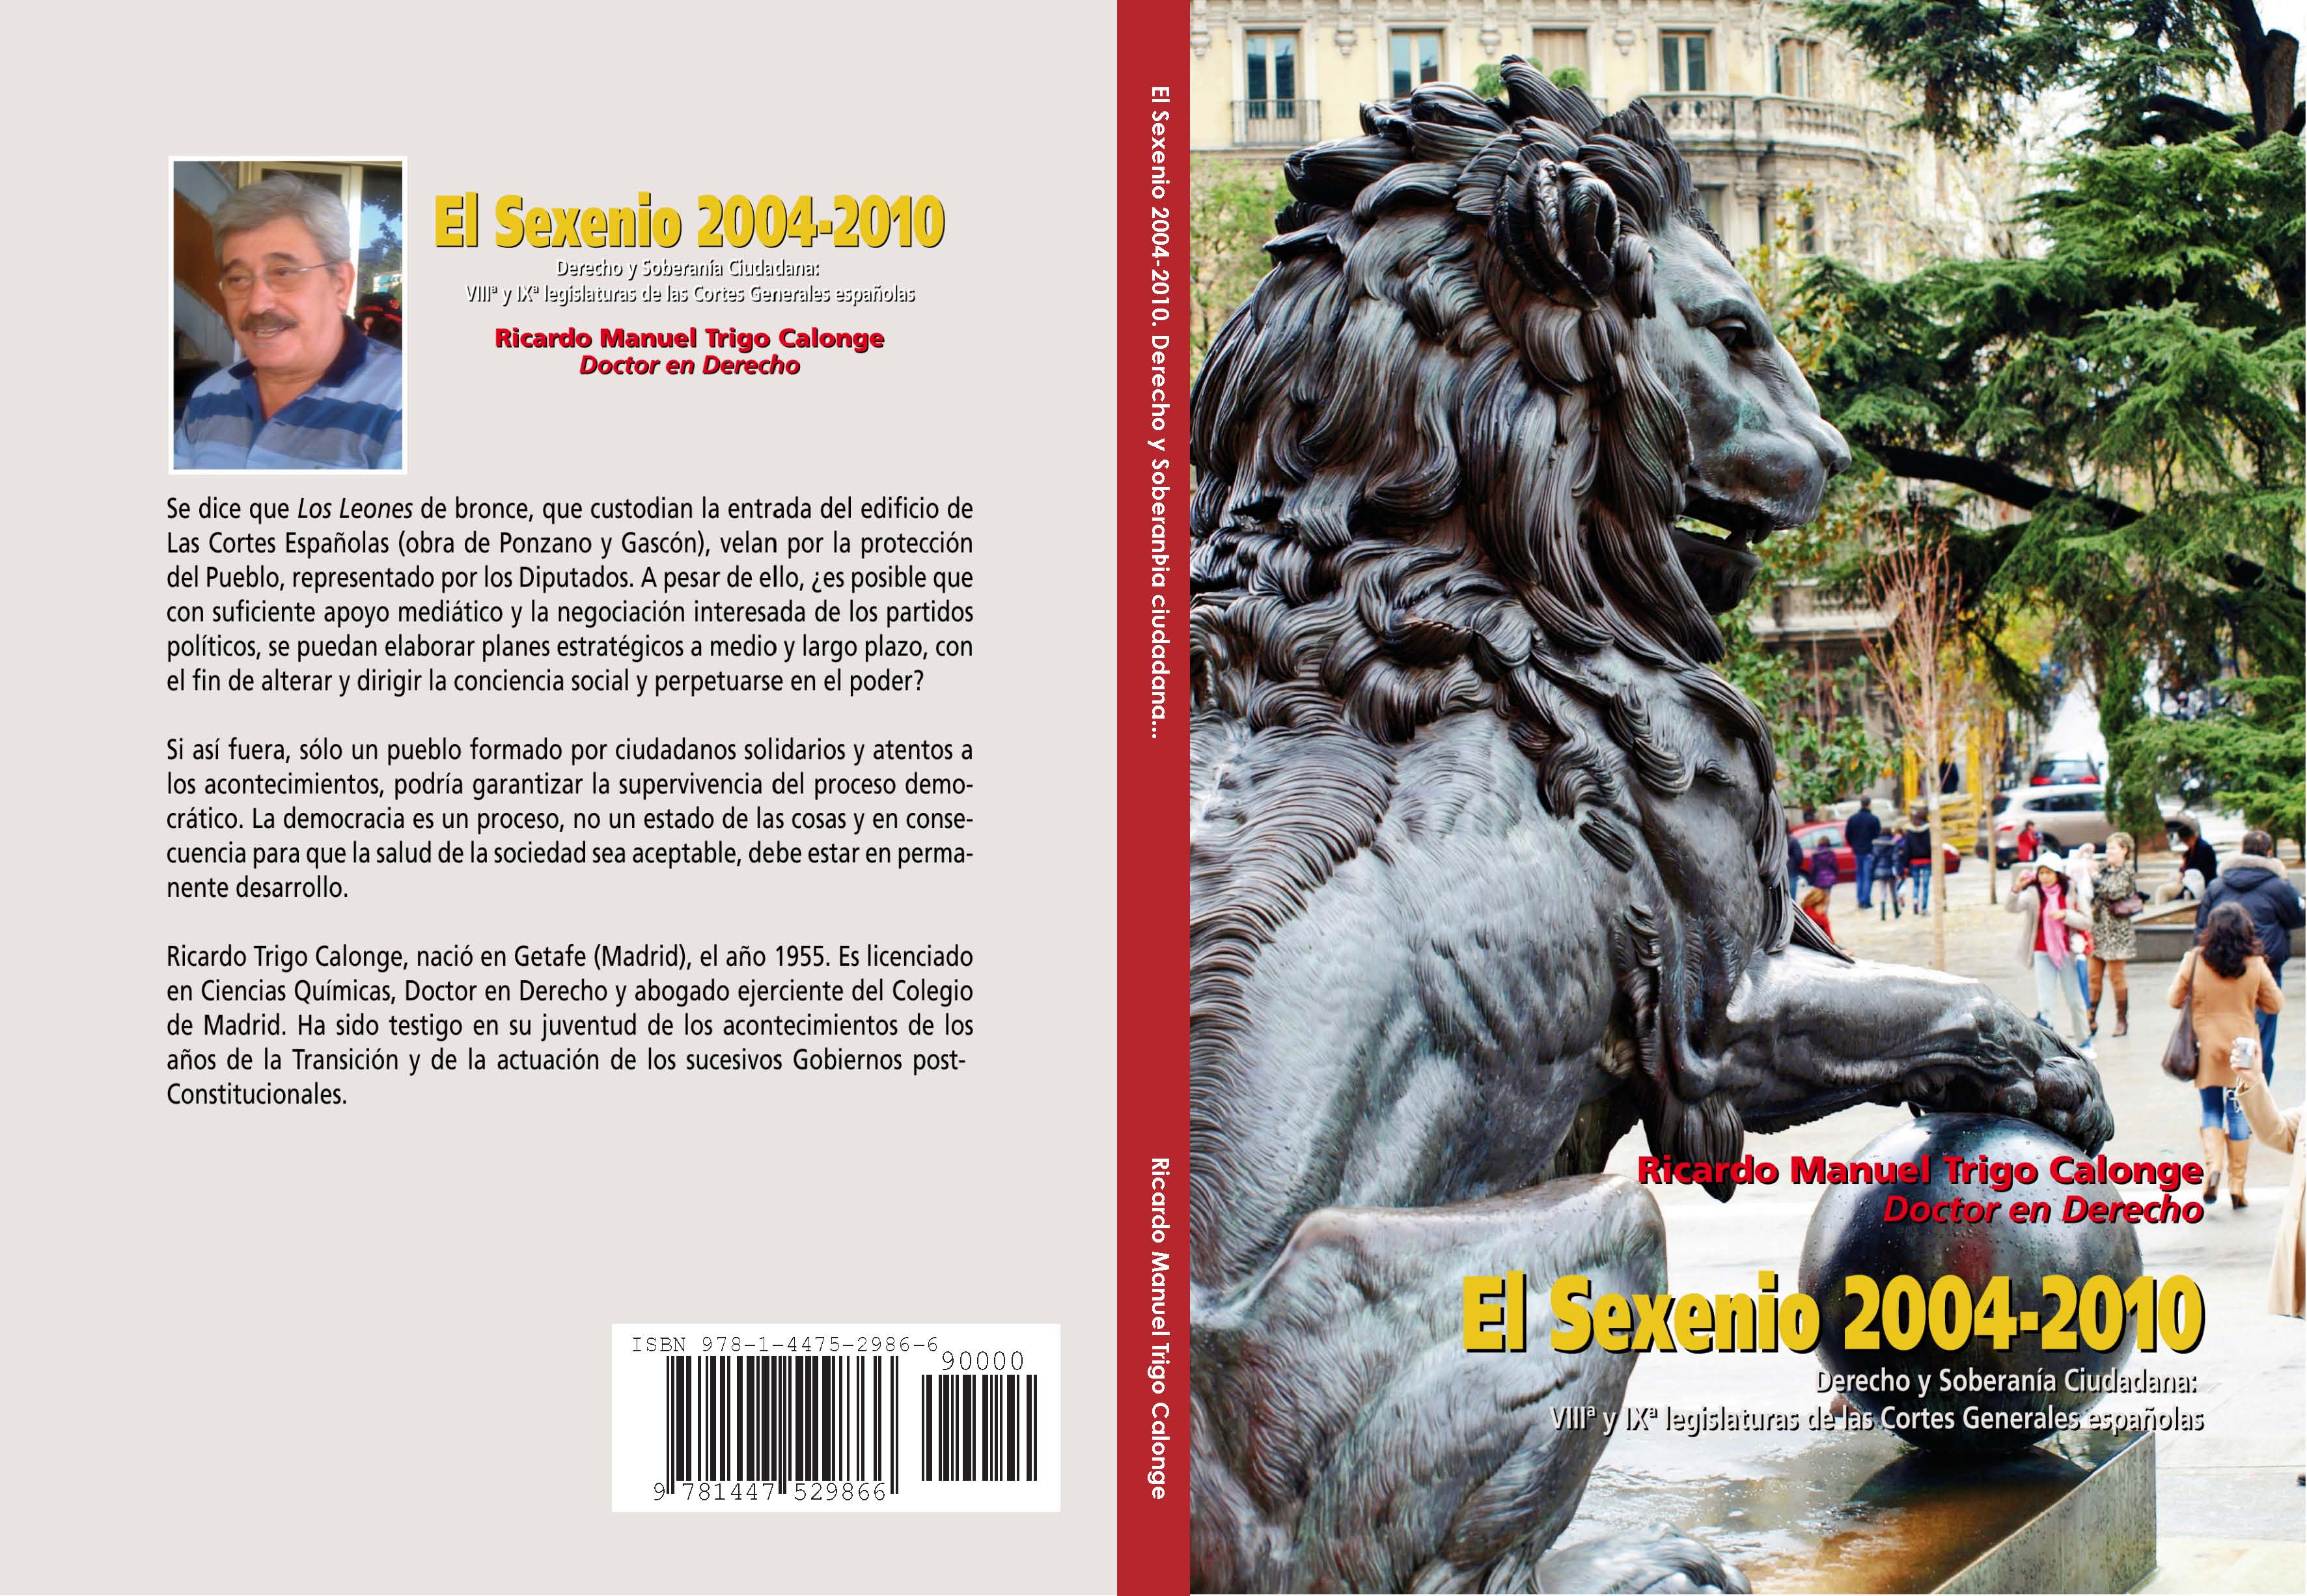 El Sexenio 2004-2010